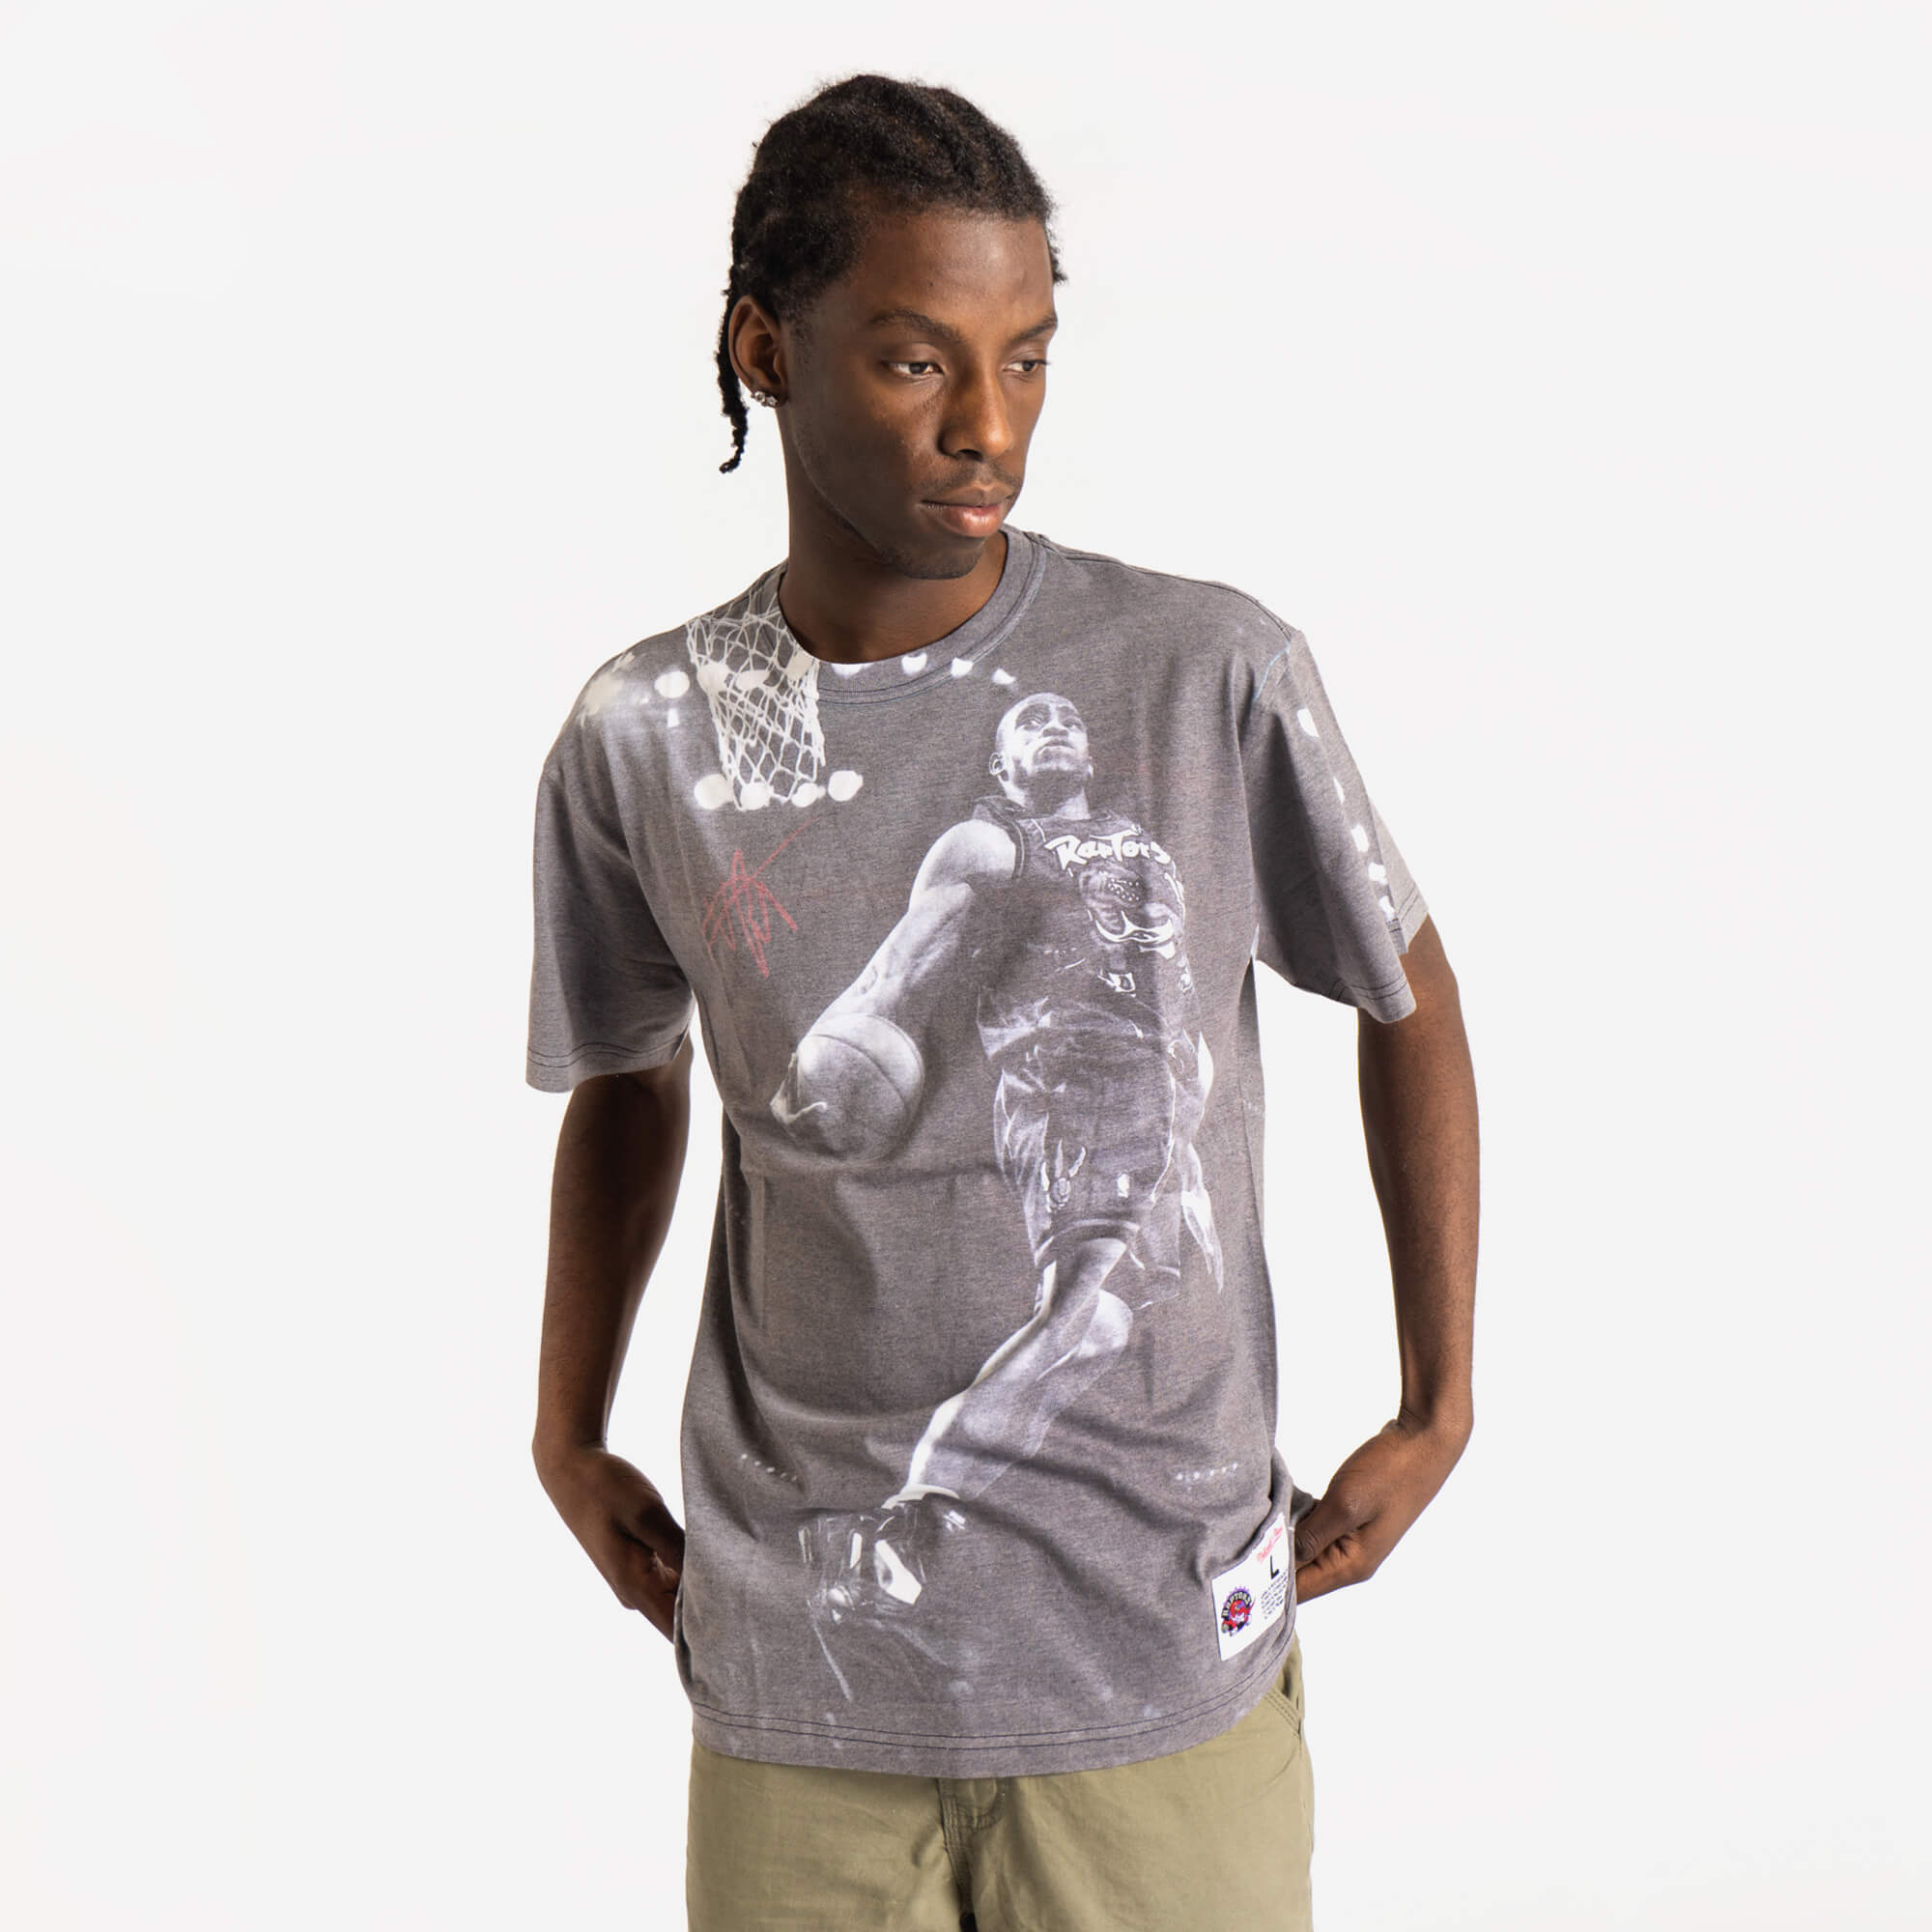 Men's Utah Jazz Mitchell & Ness Above the Rim Graphic T-Shirt